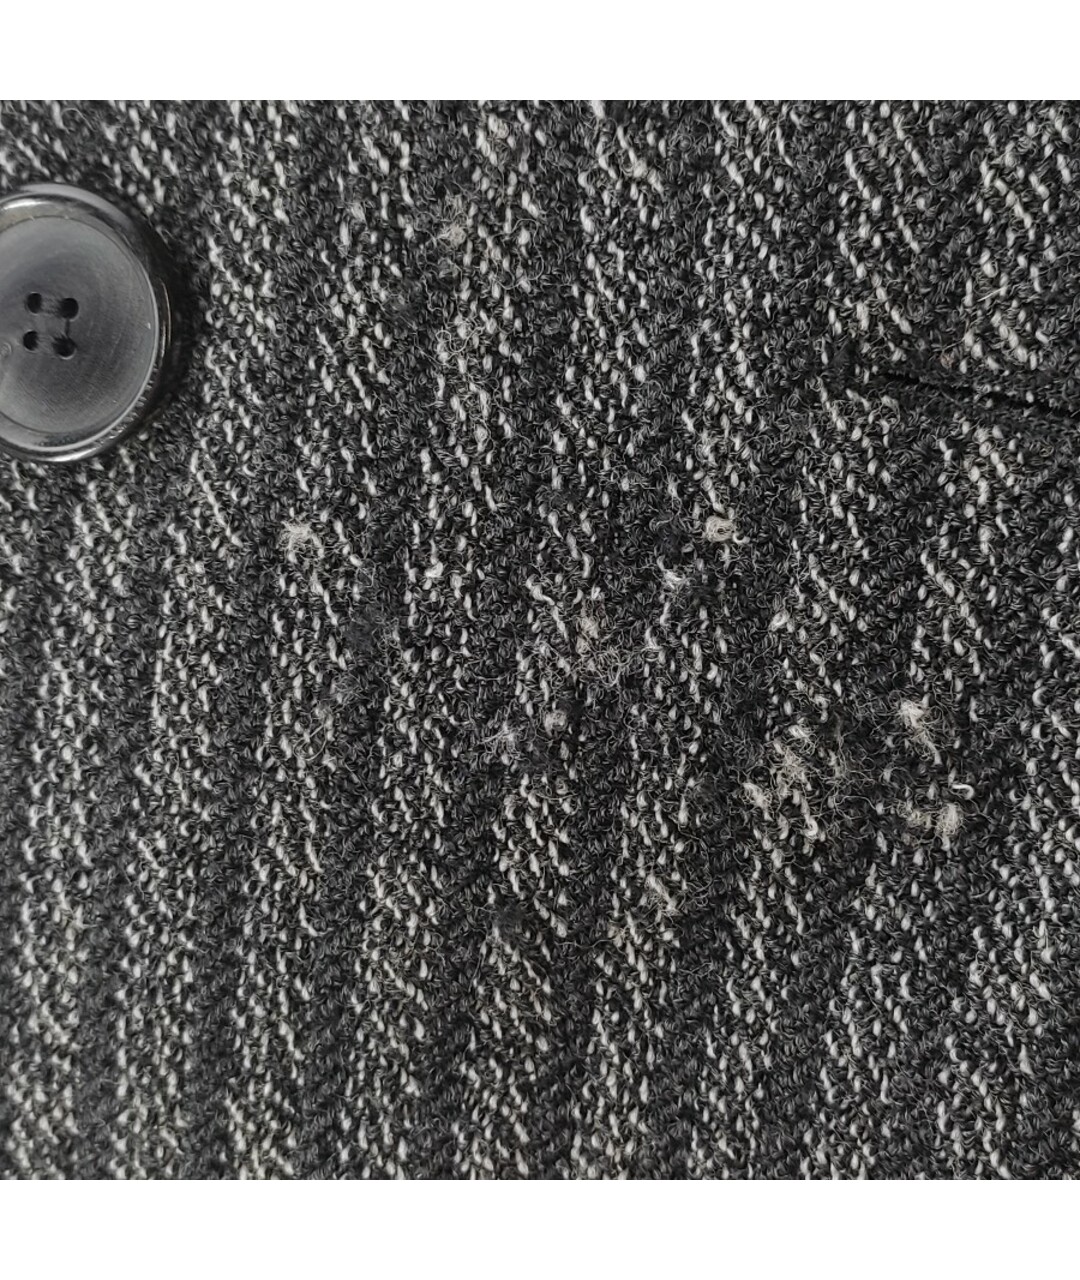 ISABEL MARANT Серый шерстяной жакет/пиджак, фото 8